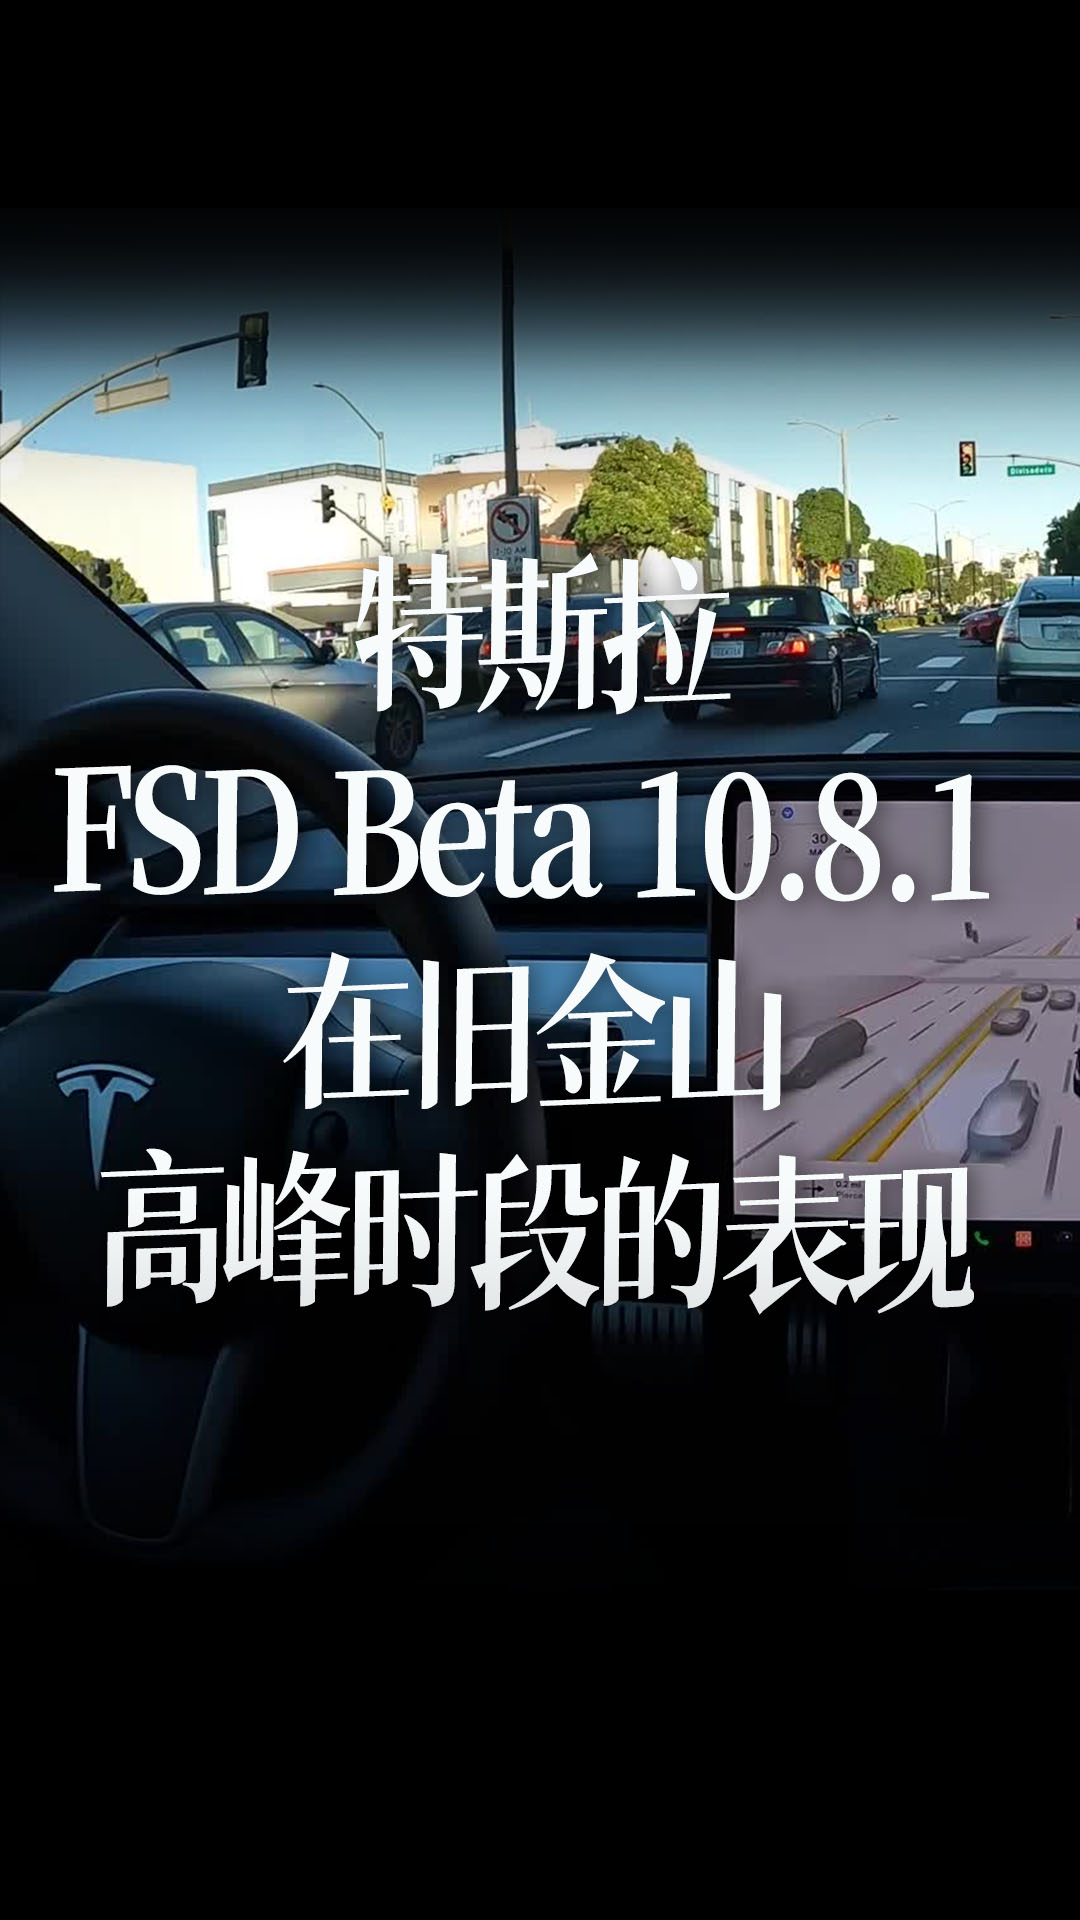 特斯拉FSD Beta 10.8.1 在旧金山高峰时段的表现